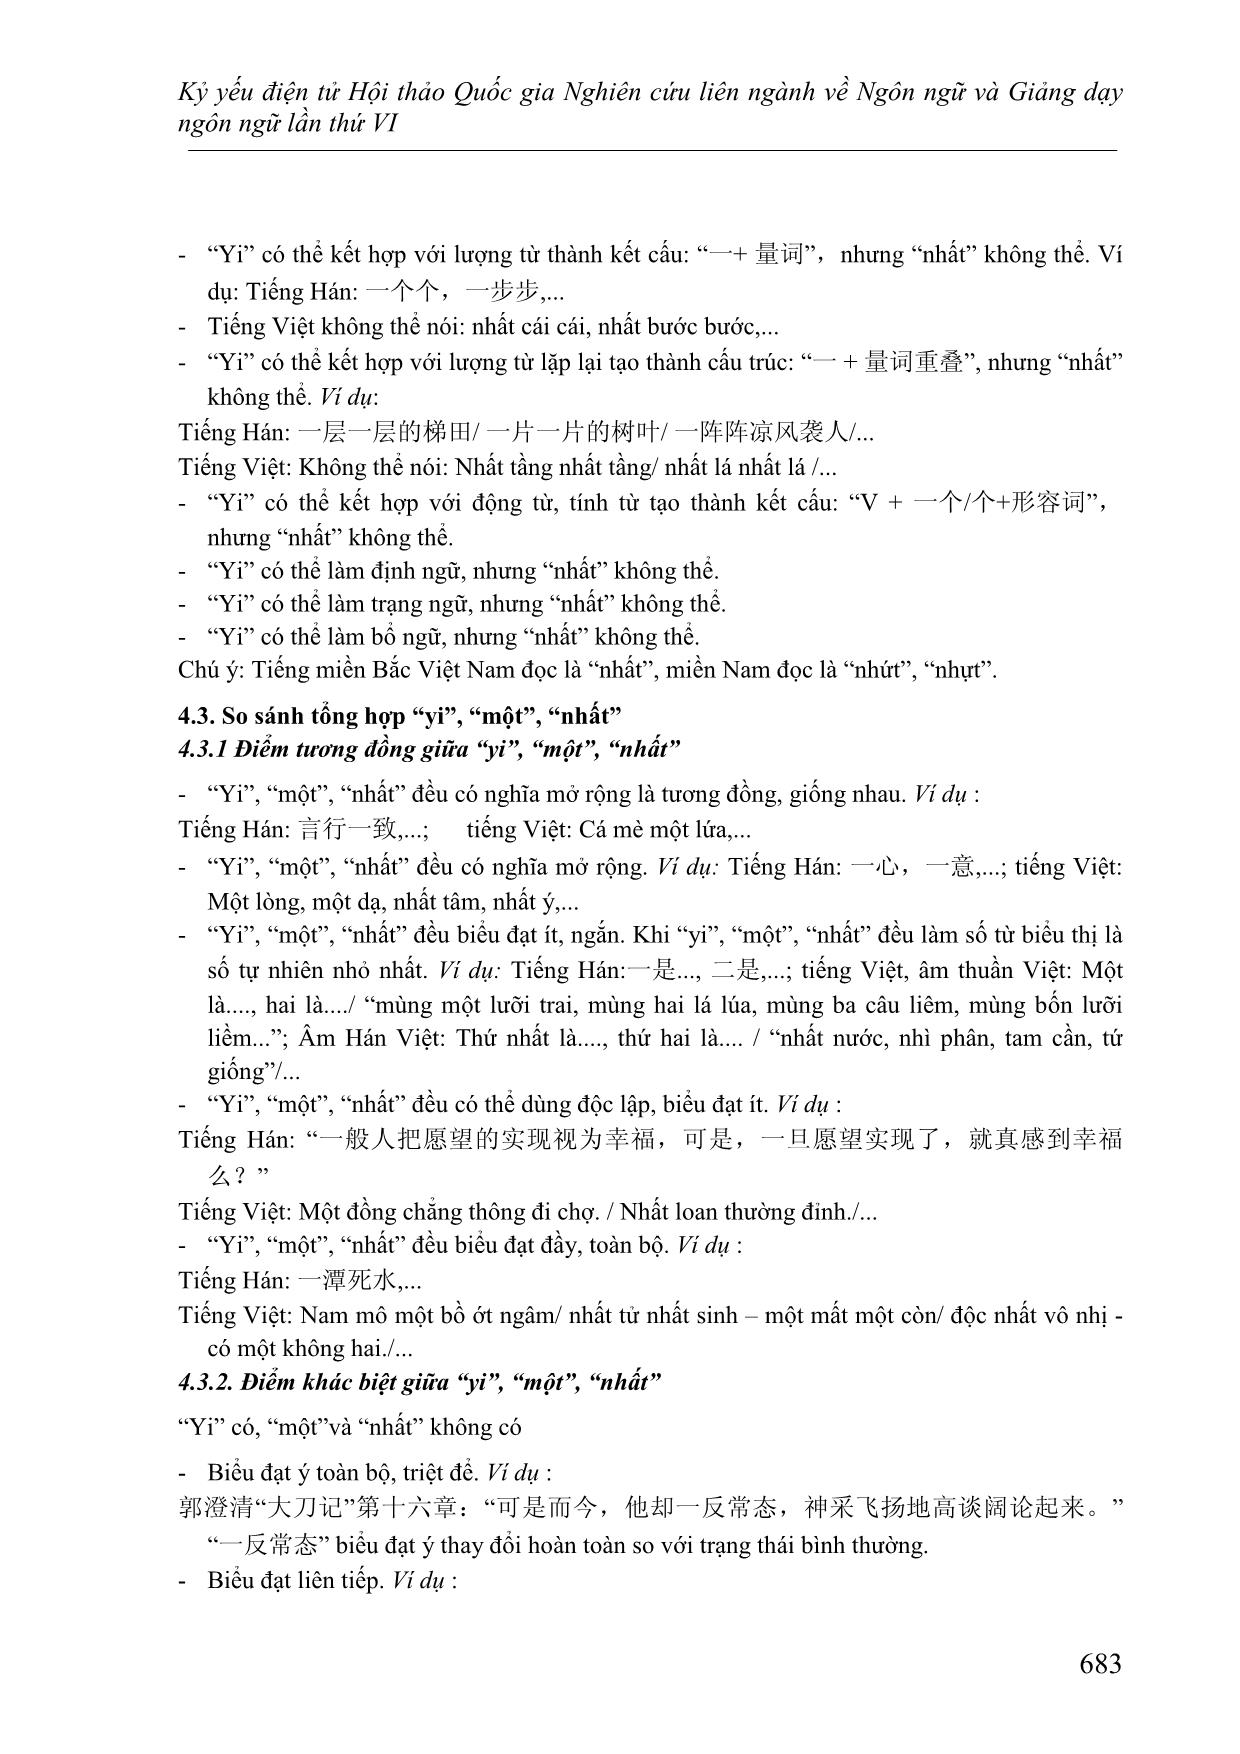 Phân tích so sánh số từ “yi” trong tiếng Hán hiện đại và từ “một, nhất” trong tiếng Việt trang 9